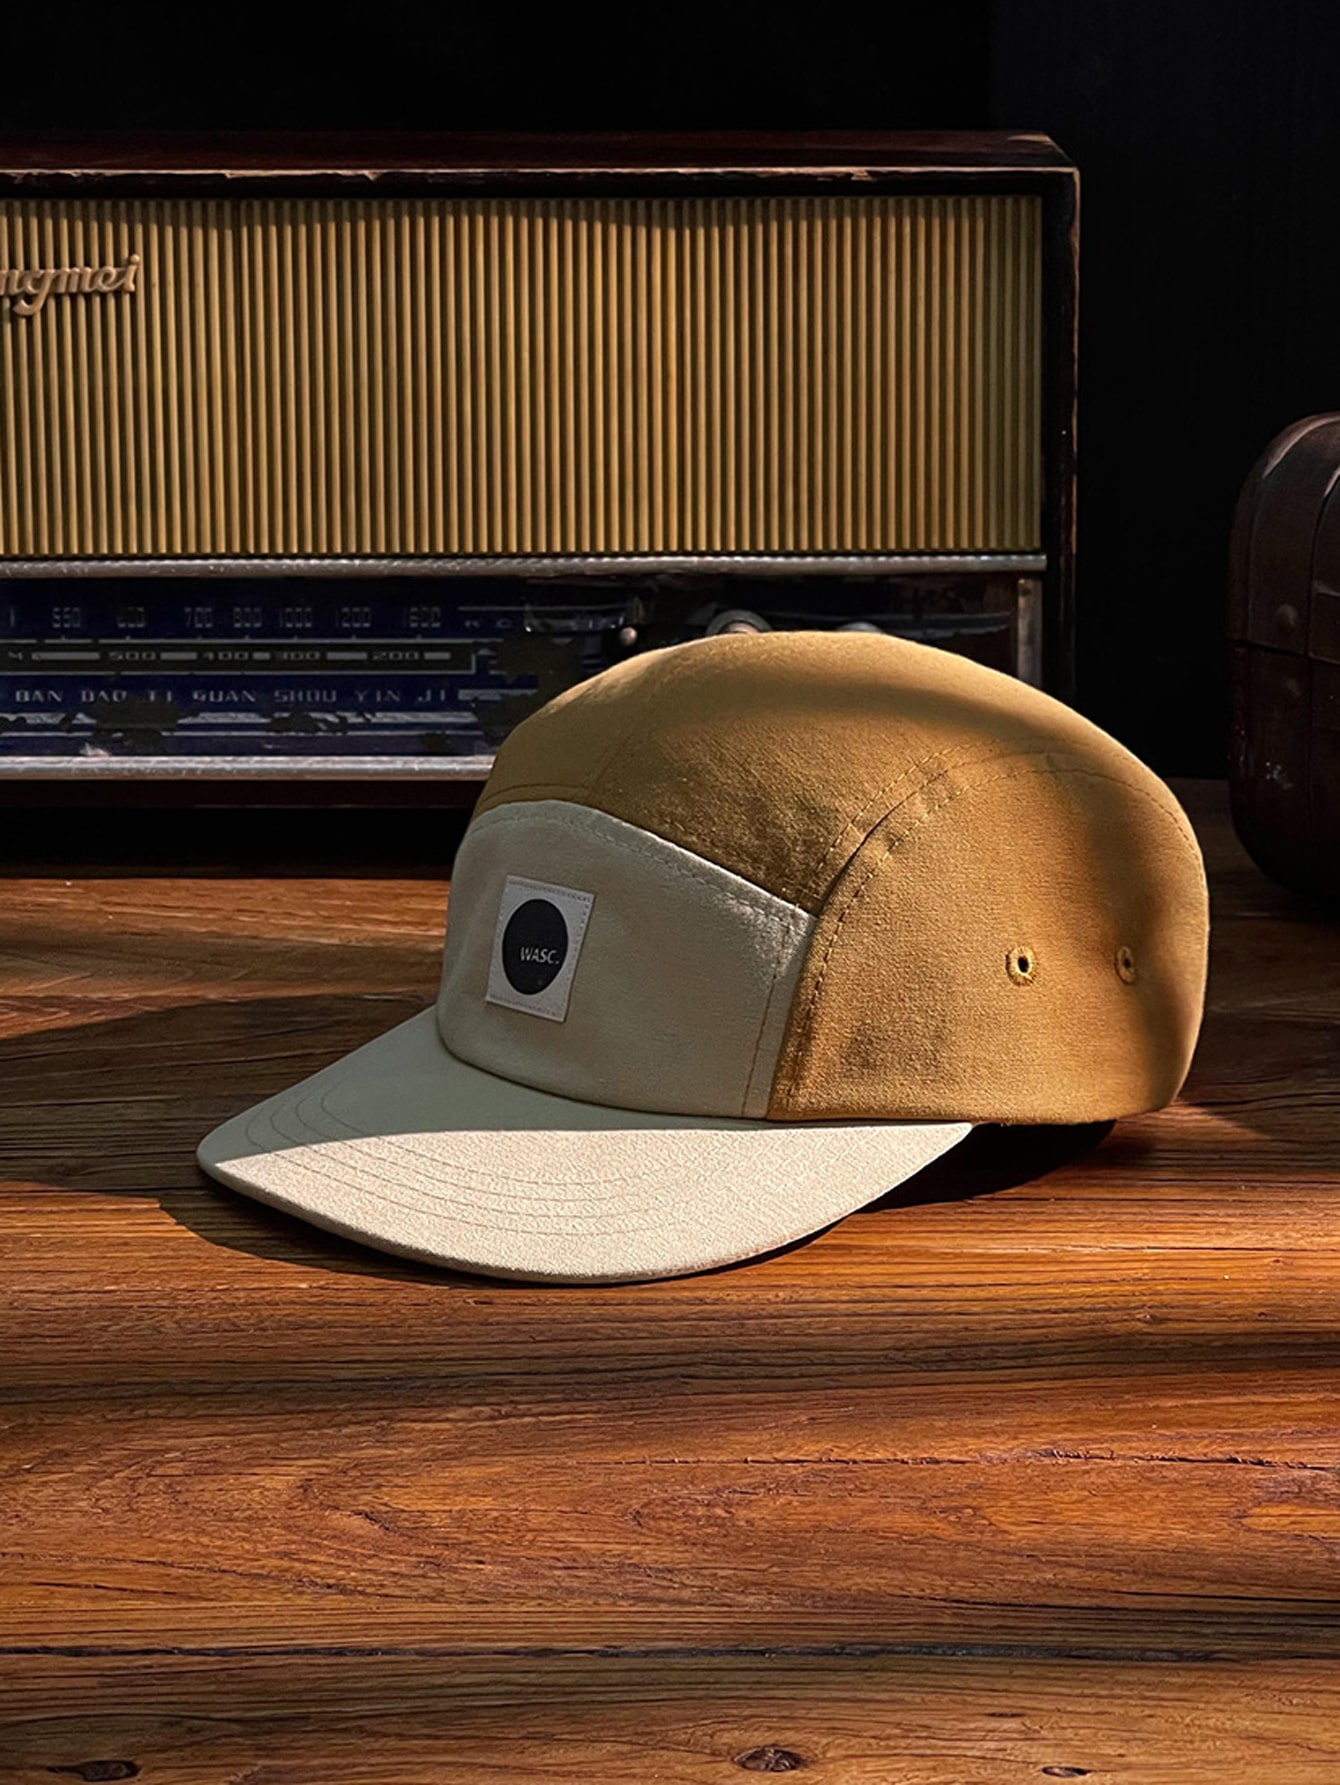 1 шт. унисекс лоскутная бейсболка из пяти частей в стиле Wasc, бежевый регулируемая модная унисекс шляпа для отдыха на открытом воздухе